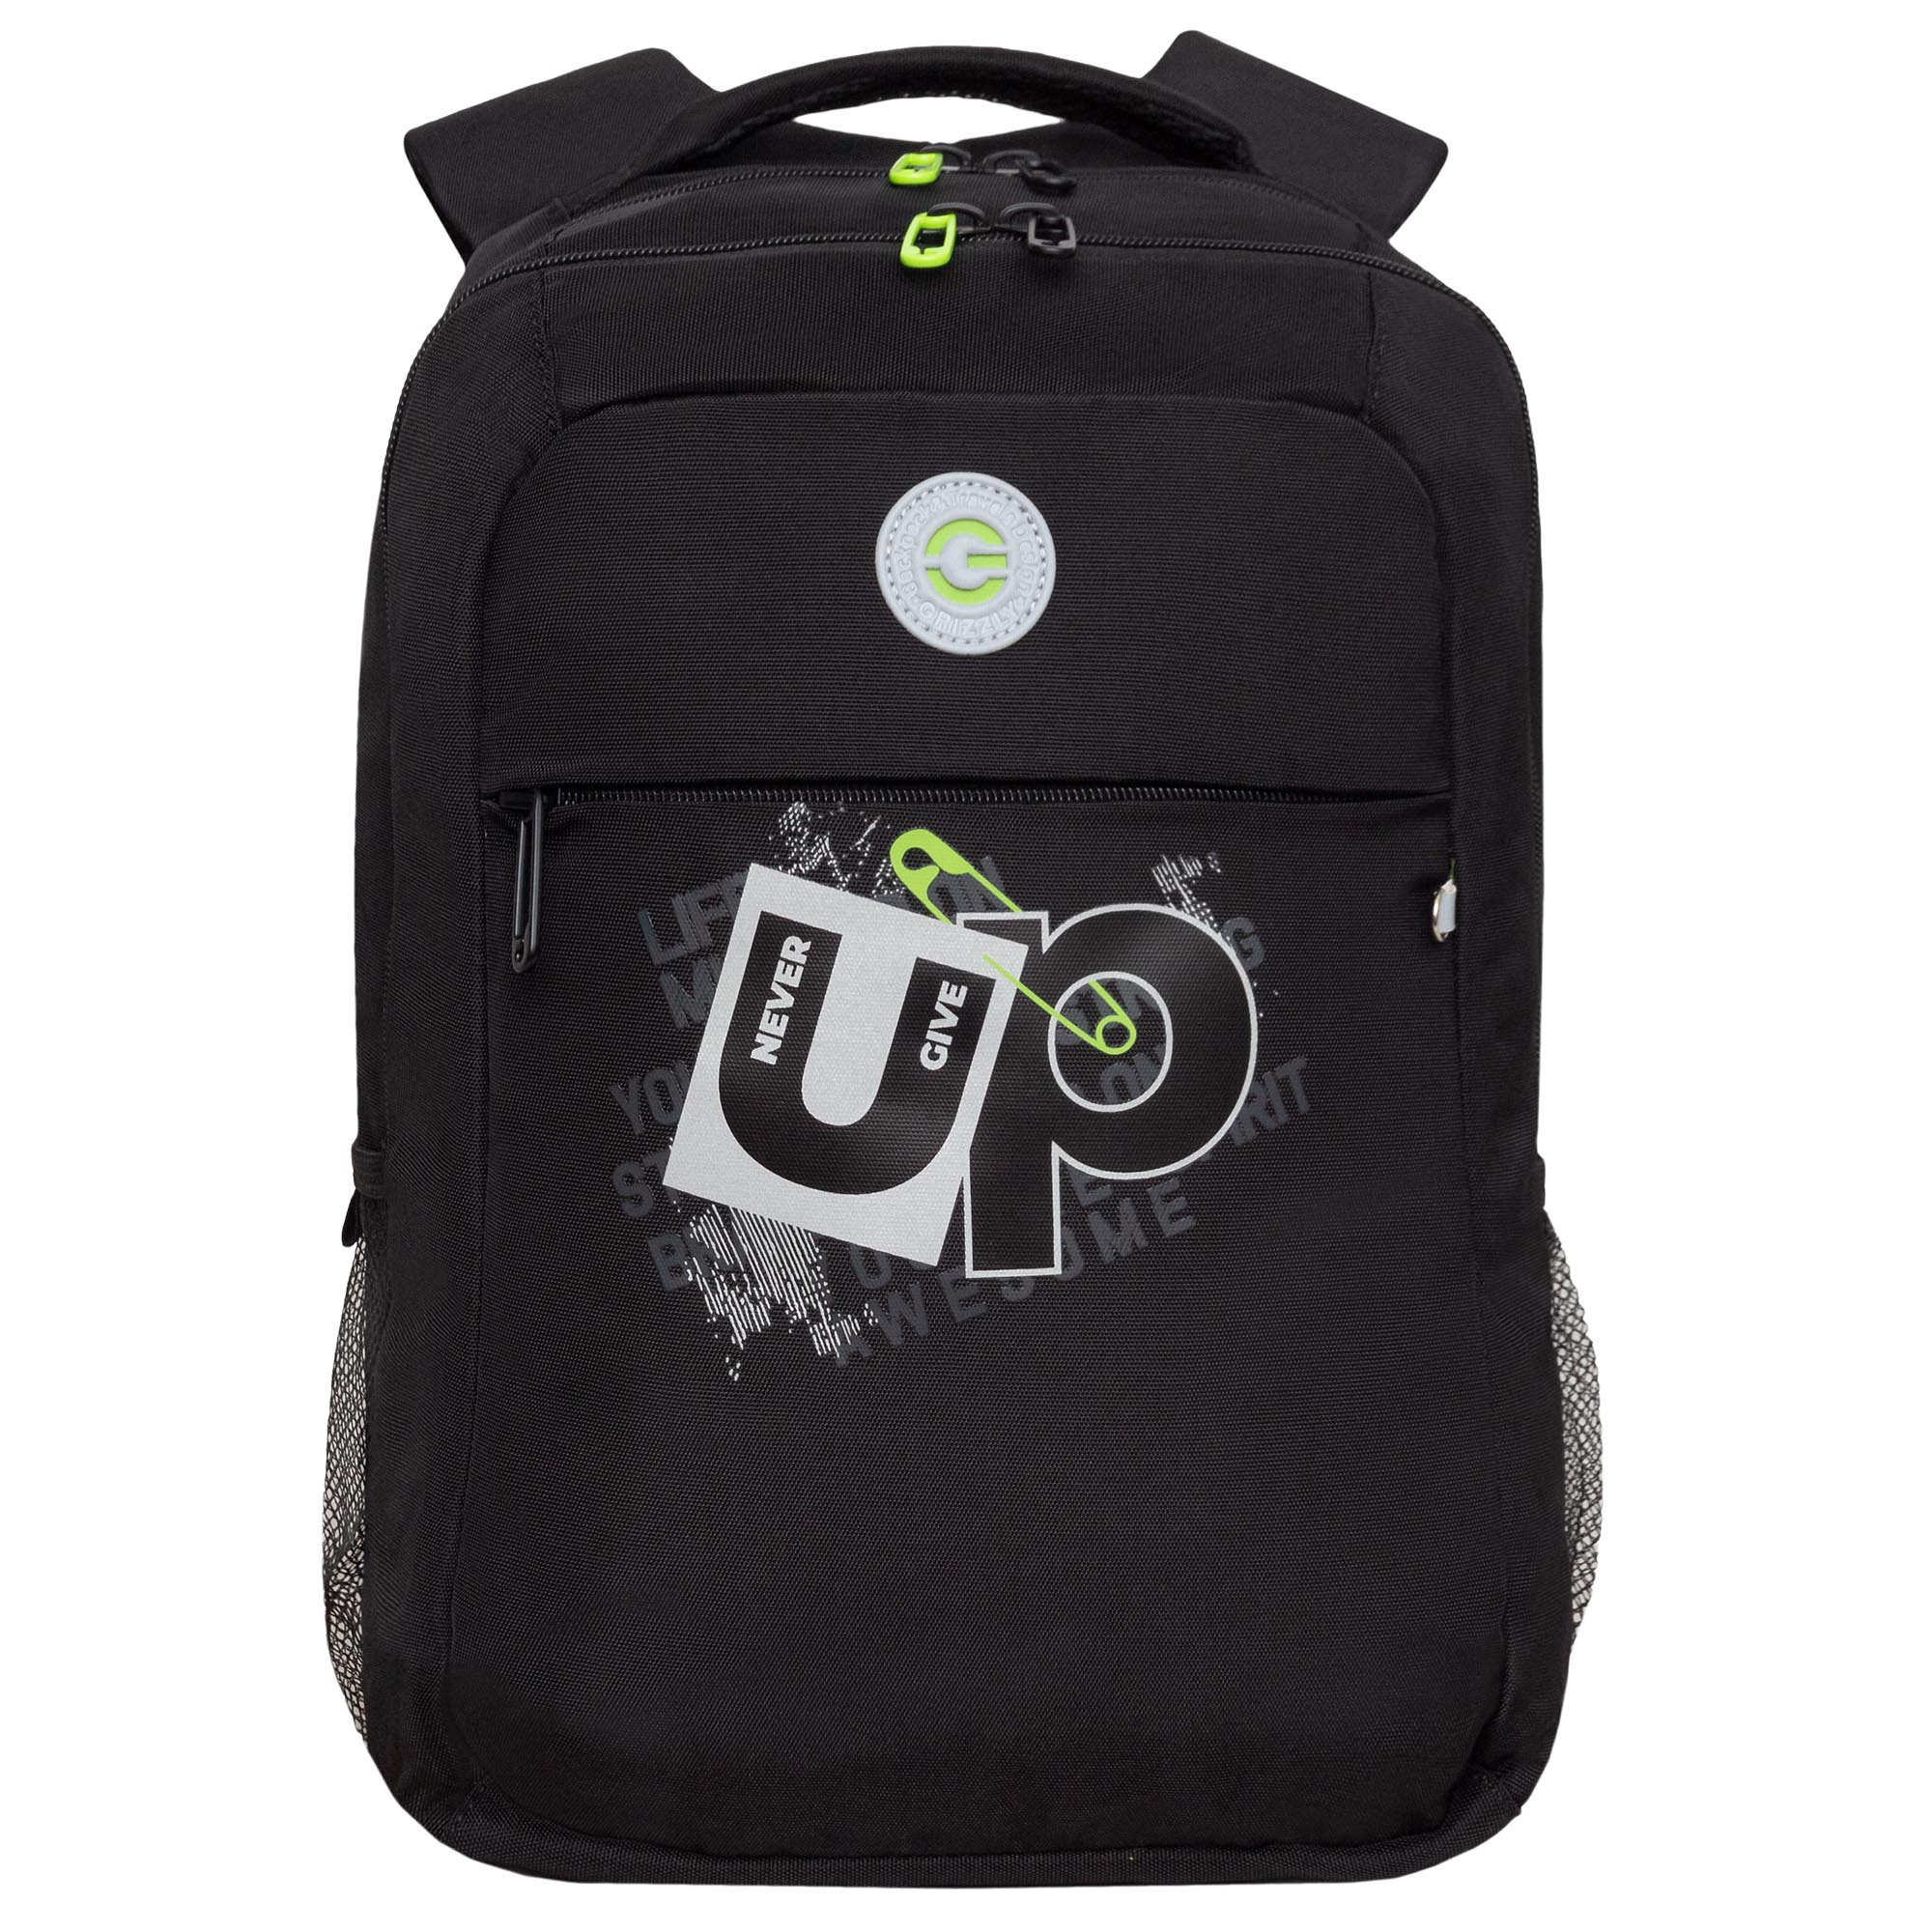 Рюкзак молодежный GRIZZLY с карманом для ноутбука 13, для мальчика, RB-456-3 1 рюкзак для ноутбука 13 3 sumdex pon 266gy